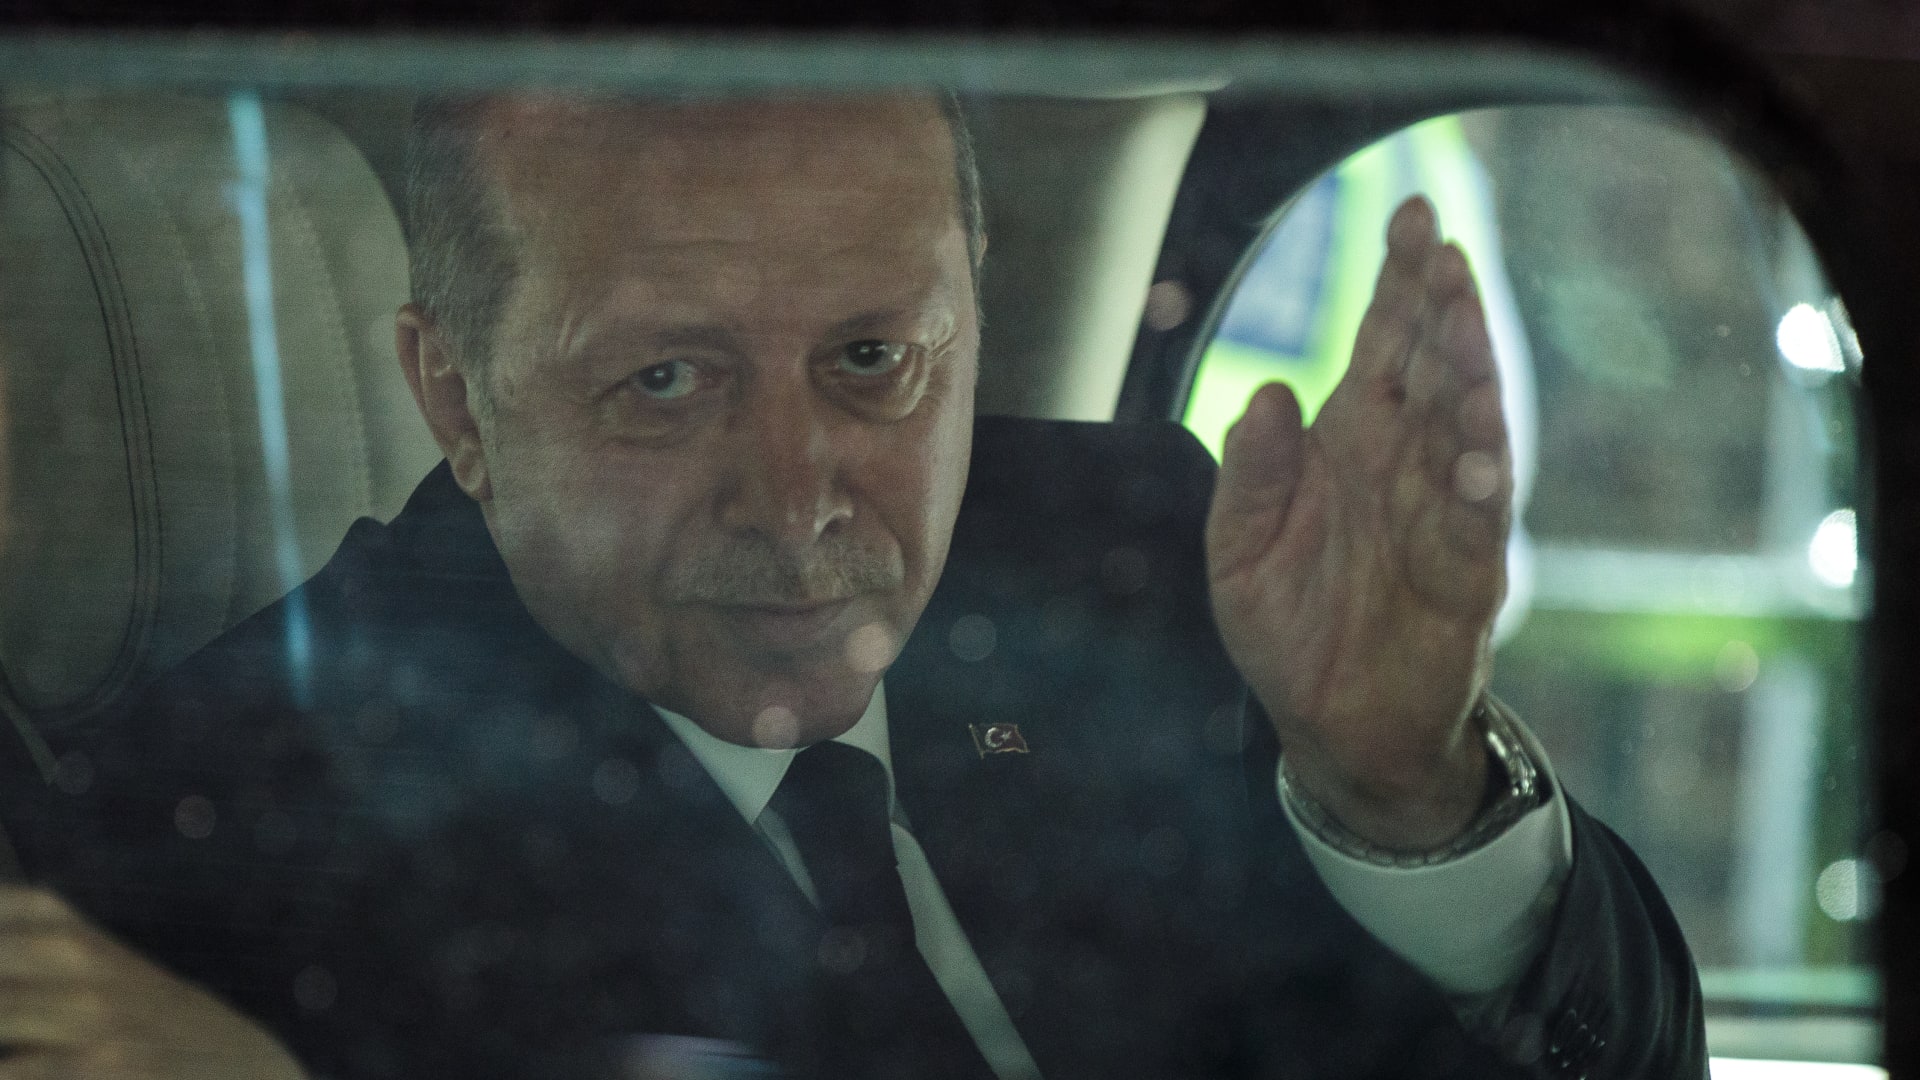 ما دوافع لقاء محمد بن زايد وأردوغان وما دوافع التغيير الذي تشهده المنطقة؟ فواز جرجس يوضح لـCNN